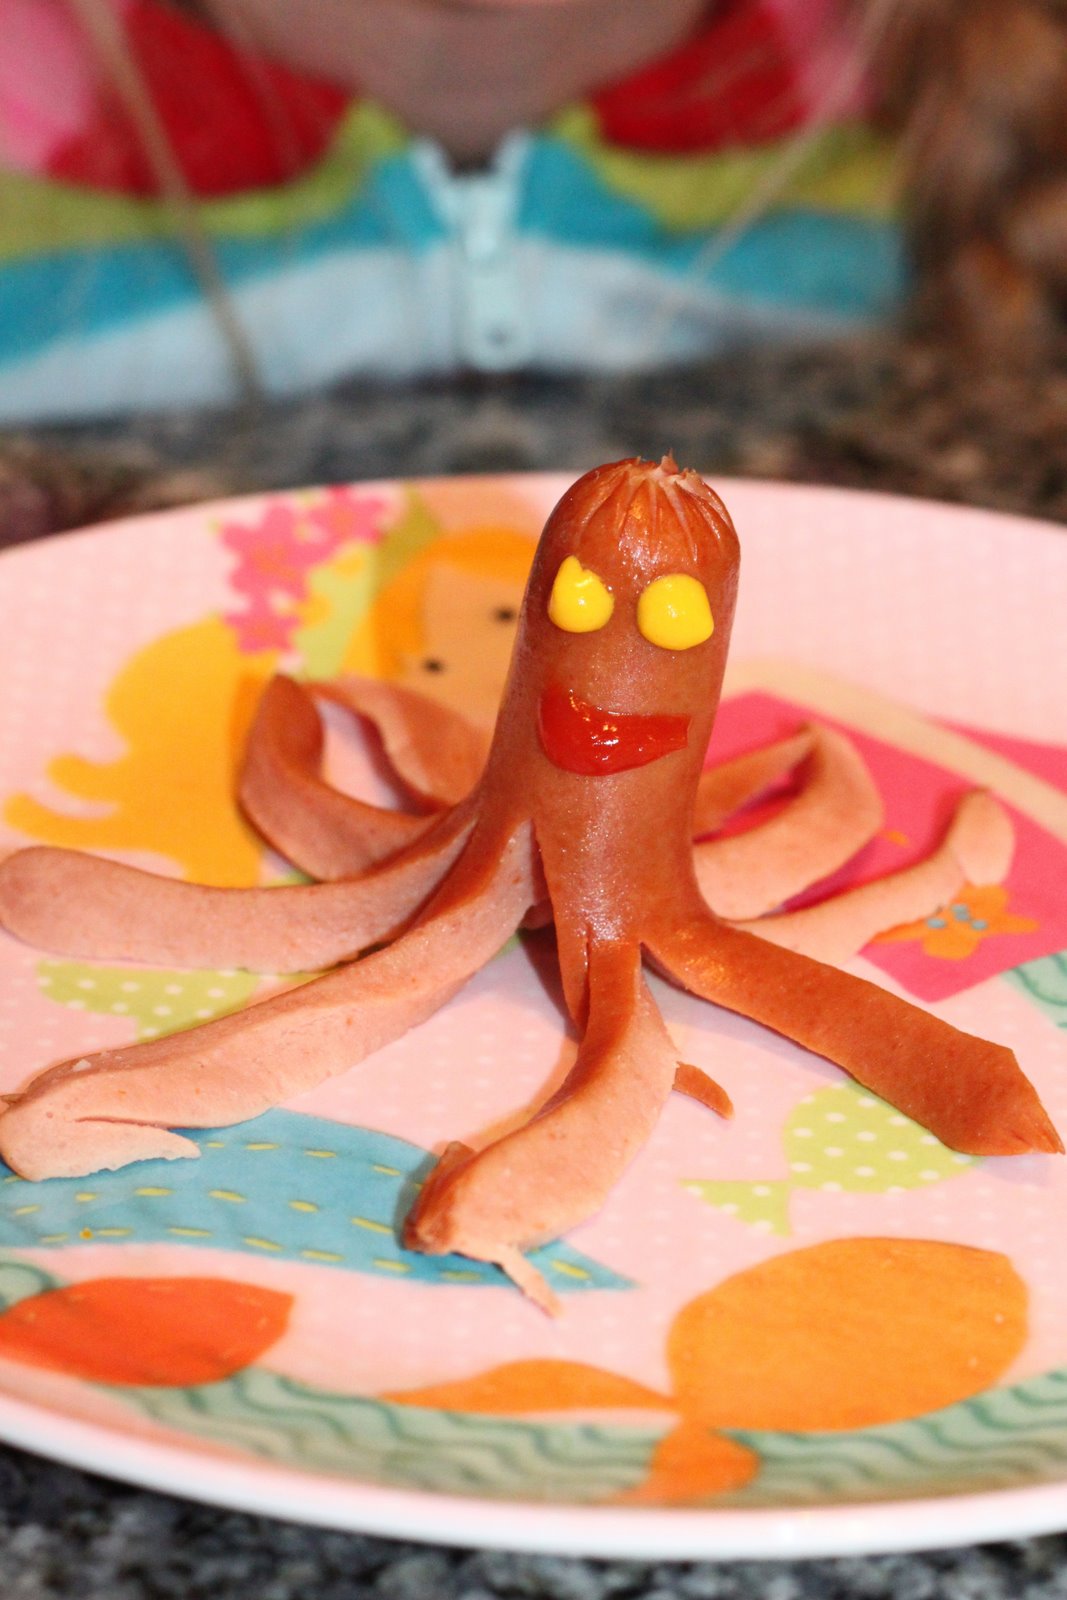 Mommy's Little Peanuts: octopus hotdogs